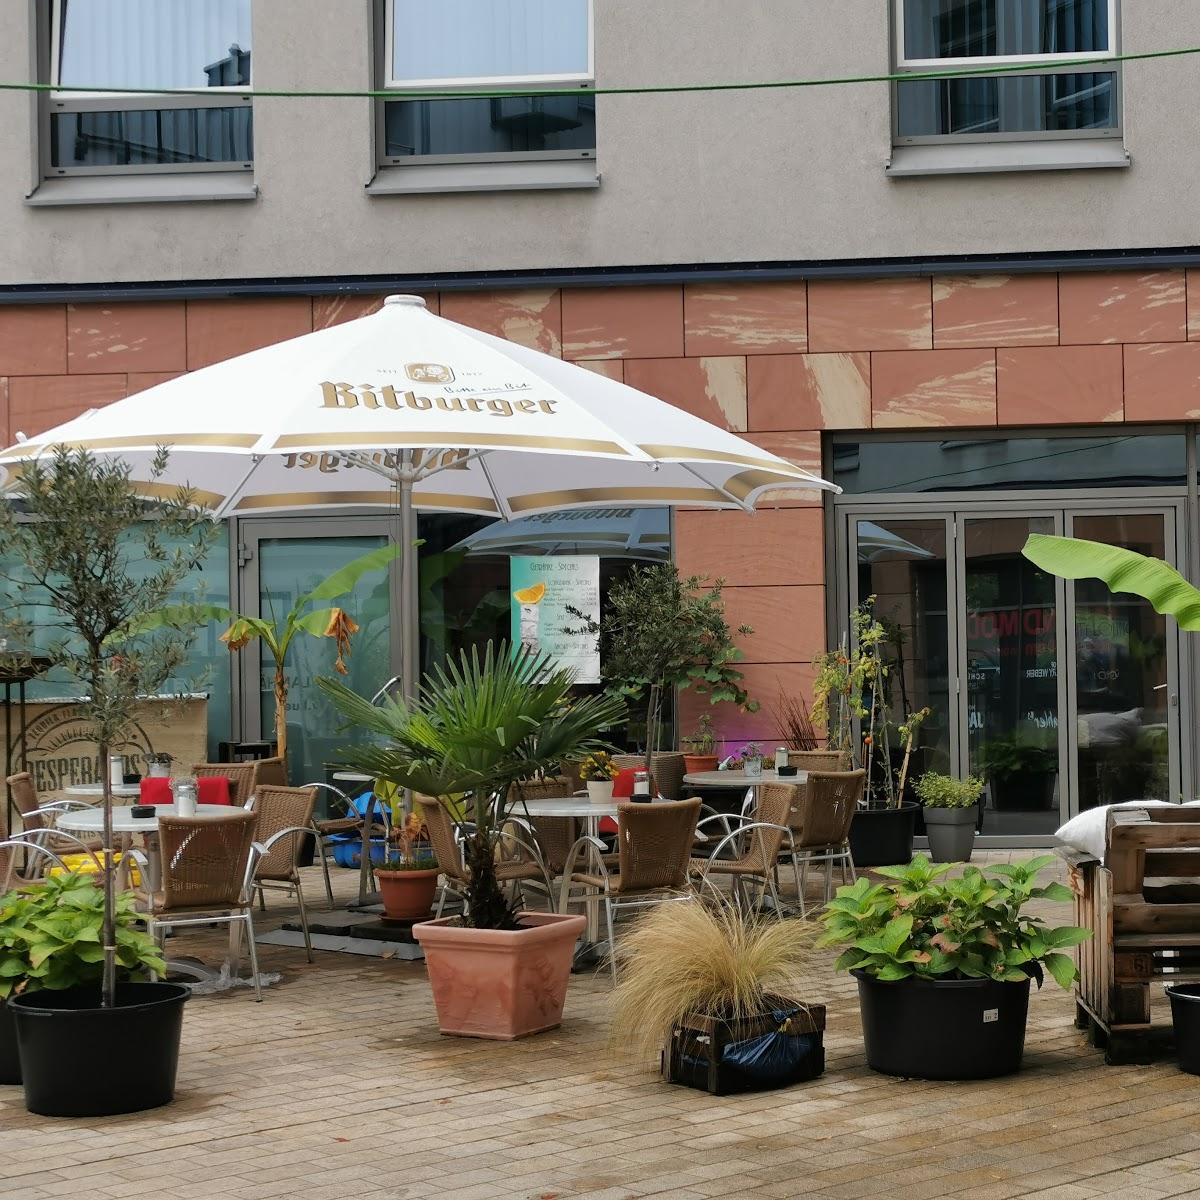 Restaurant "City Lounge" in Neustadt an der Weinstraße